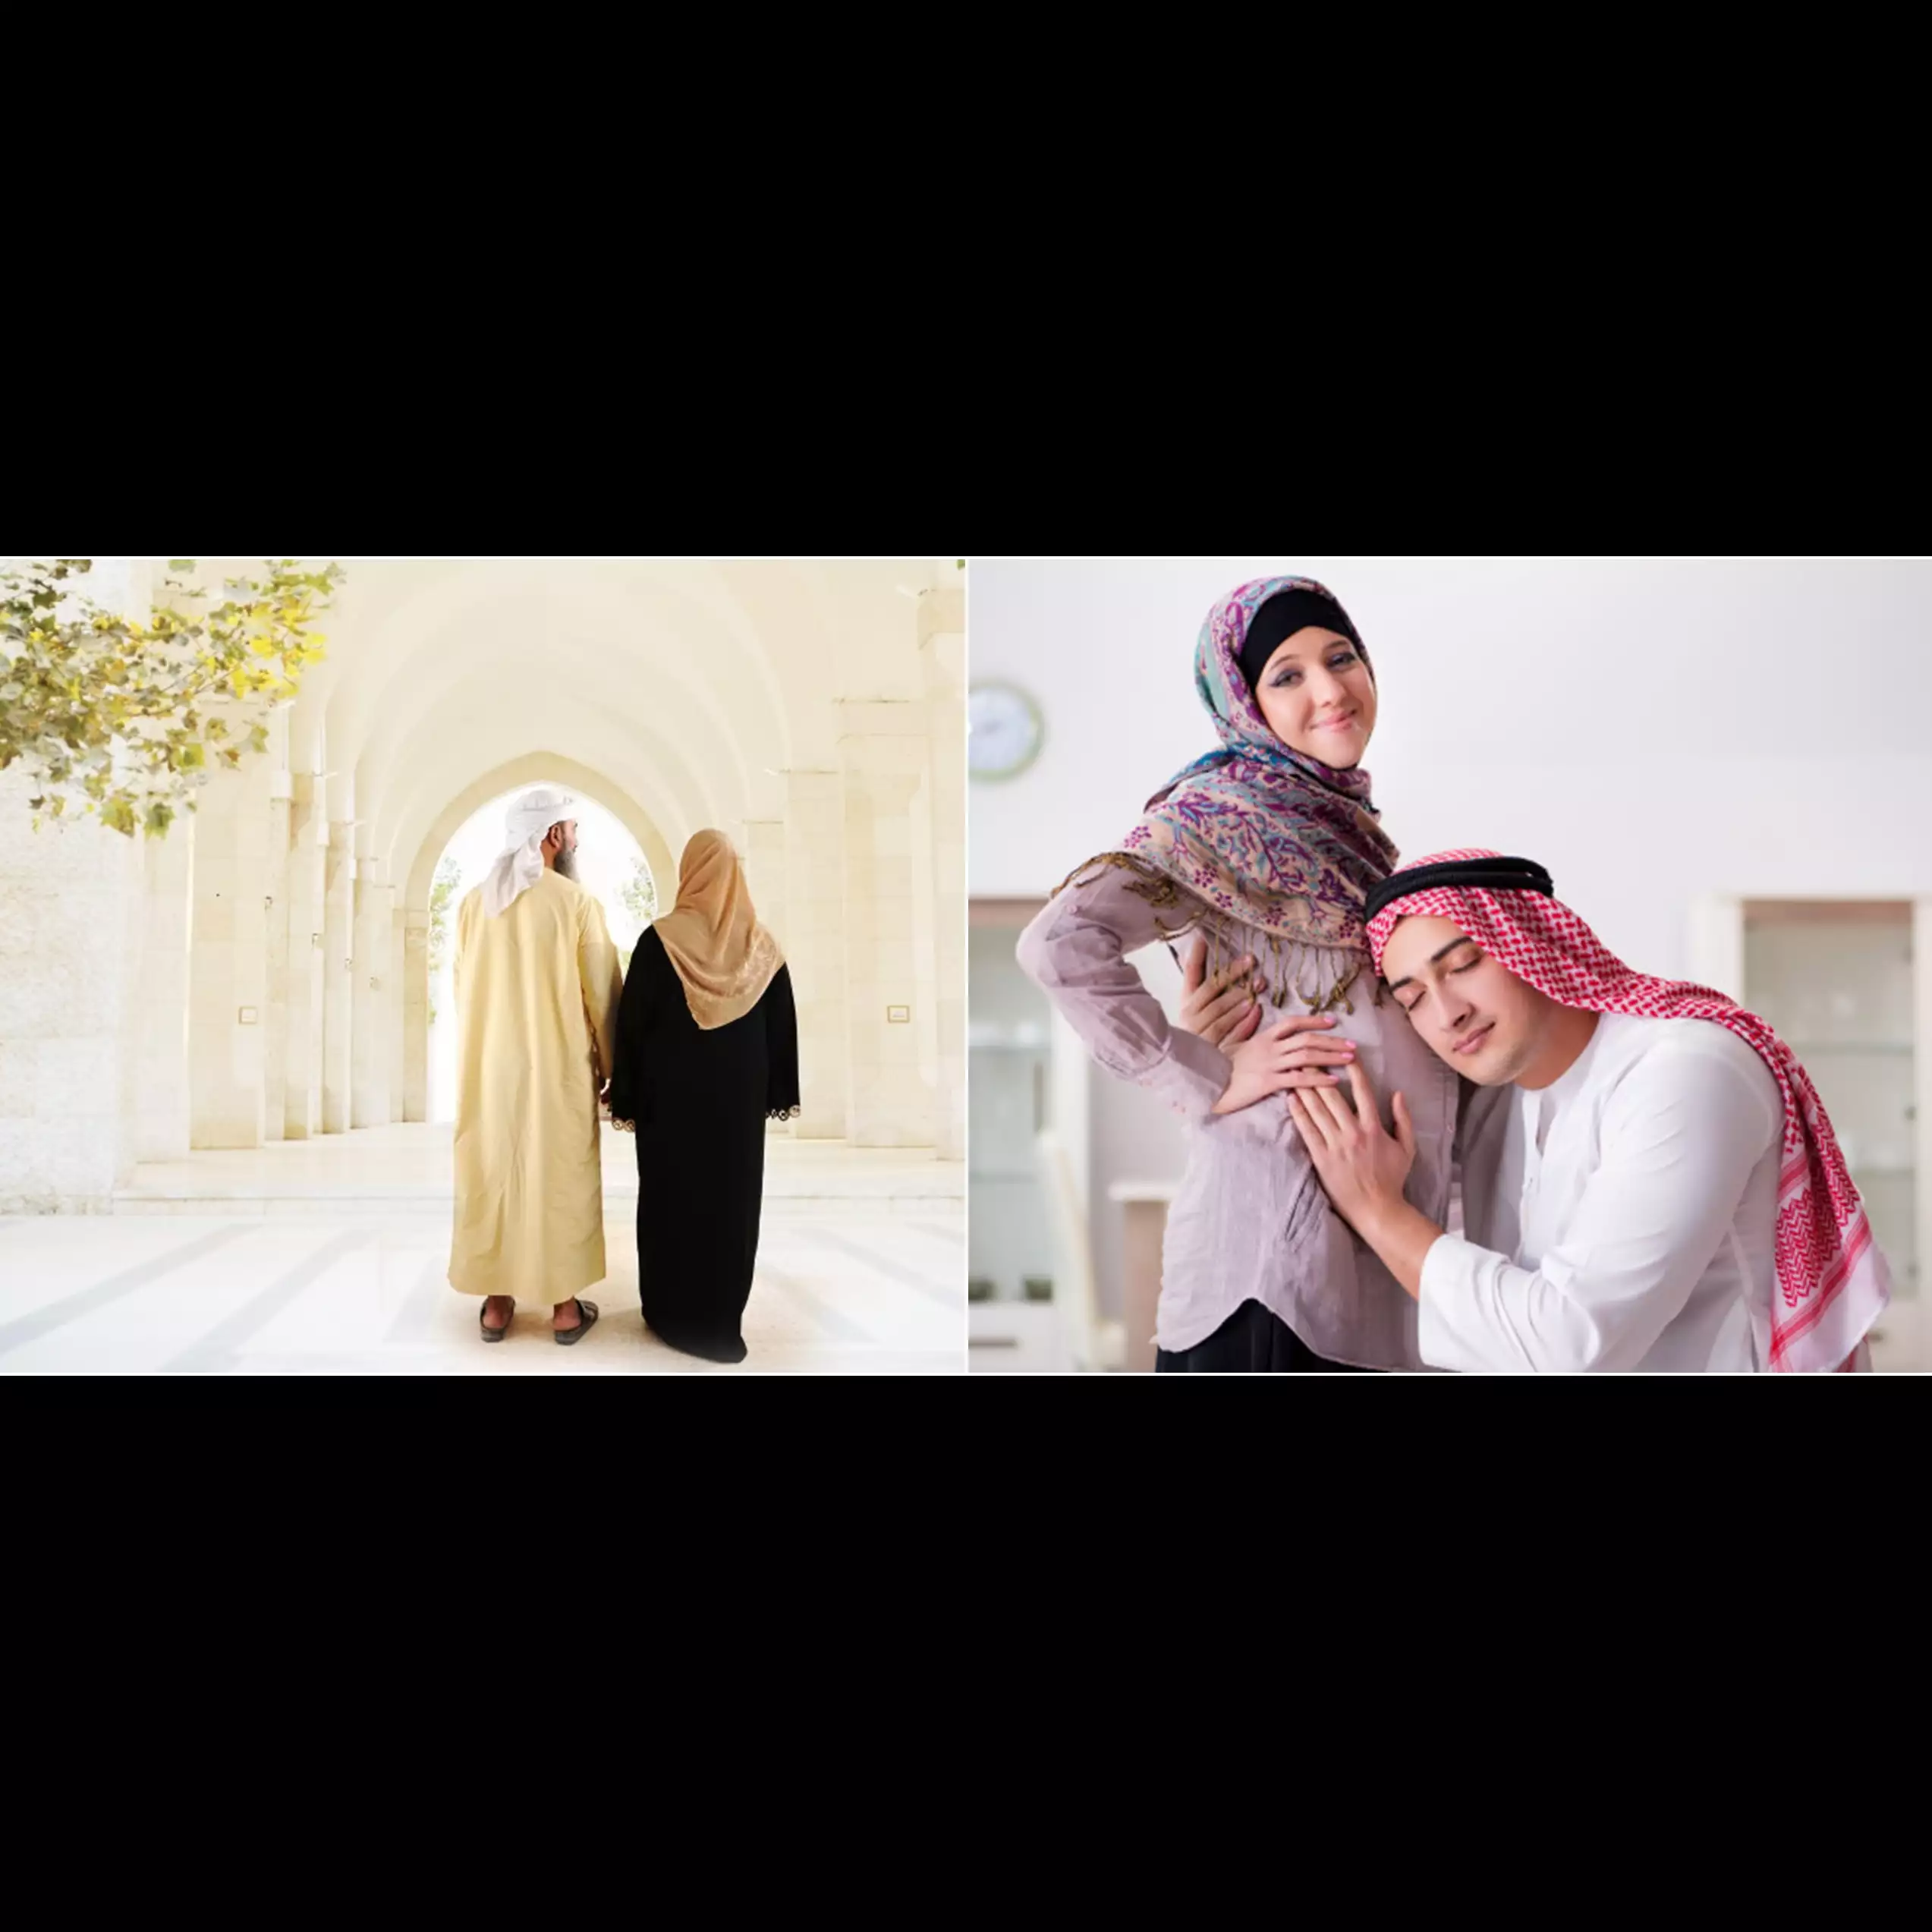 Kewajiban seorang suami terhadap istri dalam ajaran agama Islam